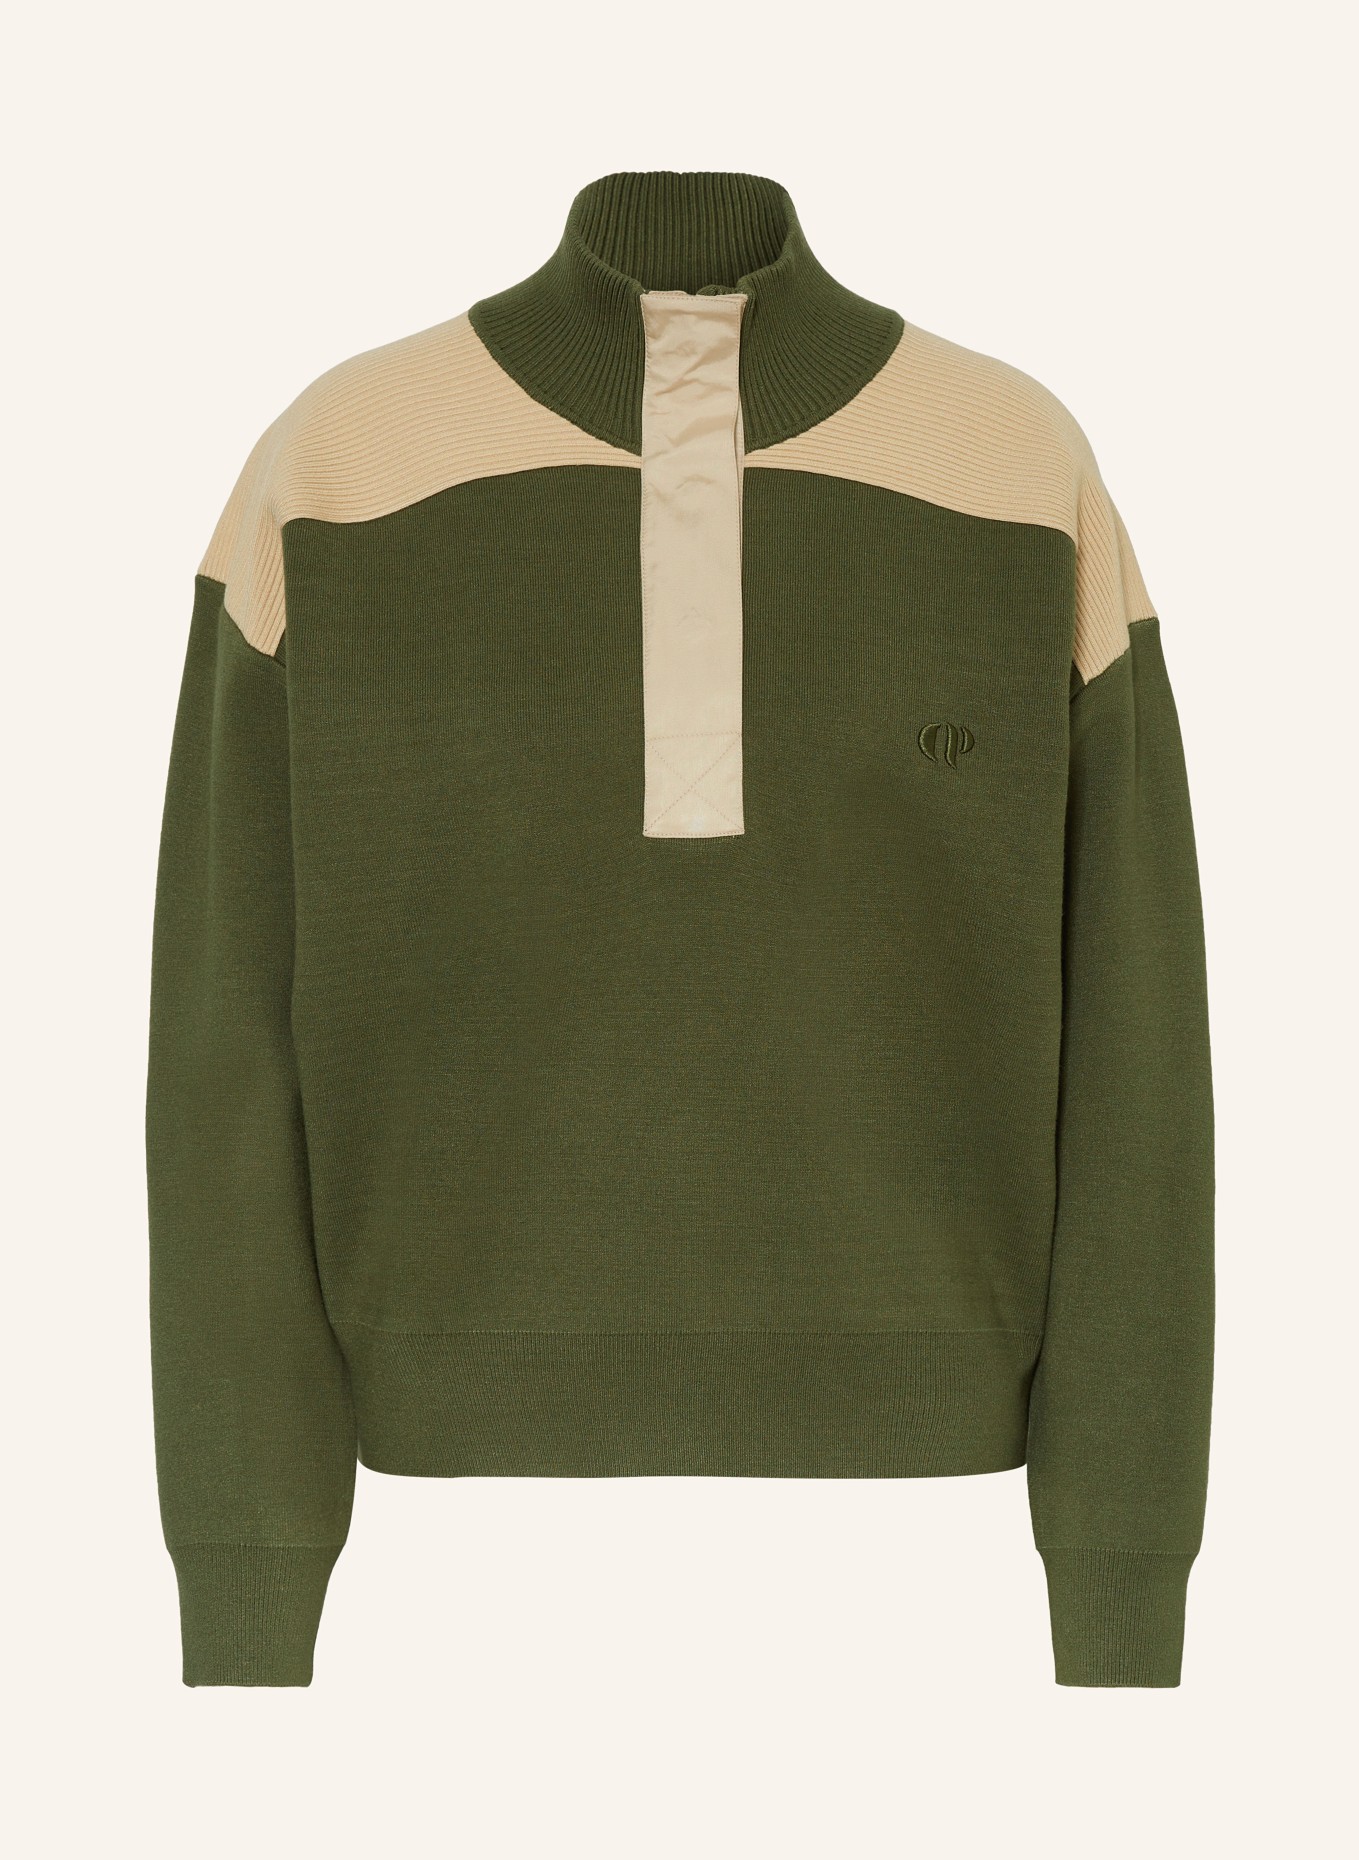 CLAUDIE PIERLOT Pullover, Farbe: GRÜN/ BEIGE (Bild 1)